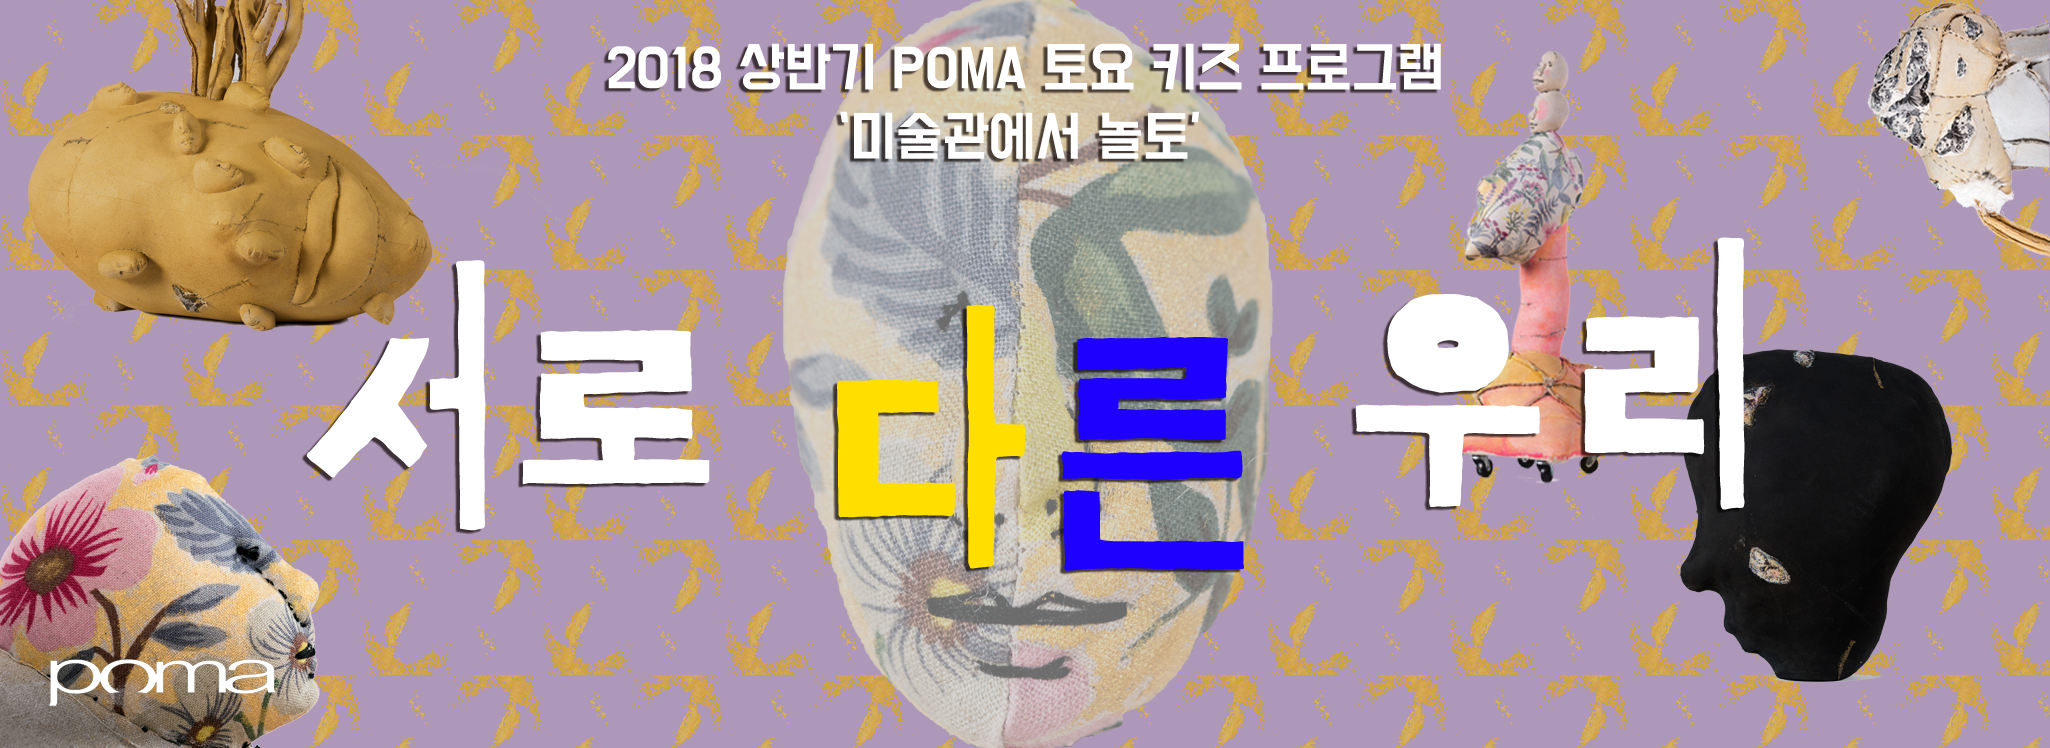 2018-놀토-상반기-프로그램-홍보-웹배너-최종